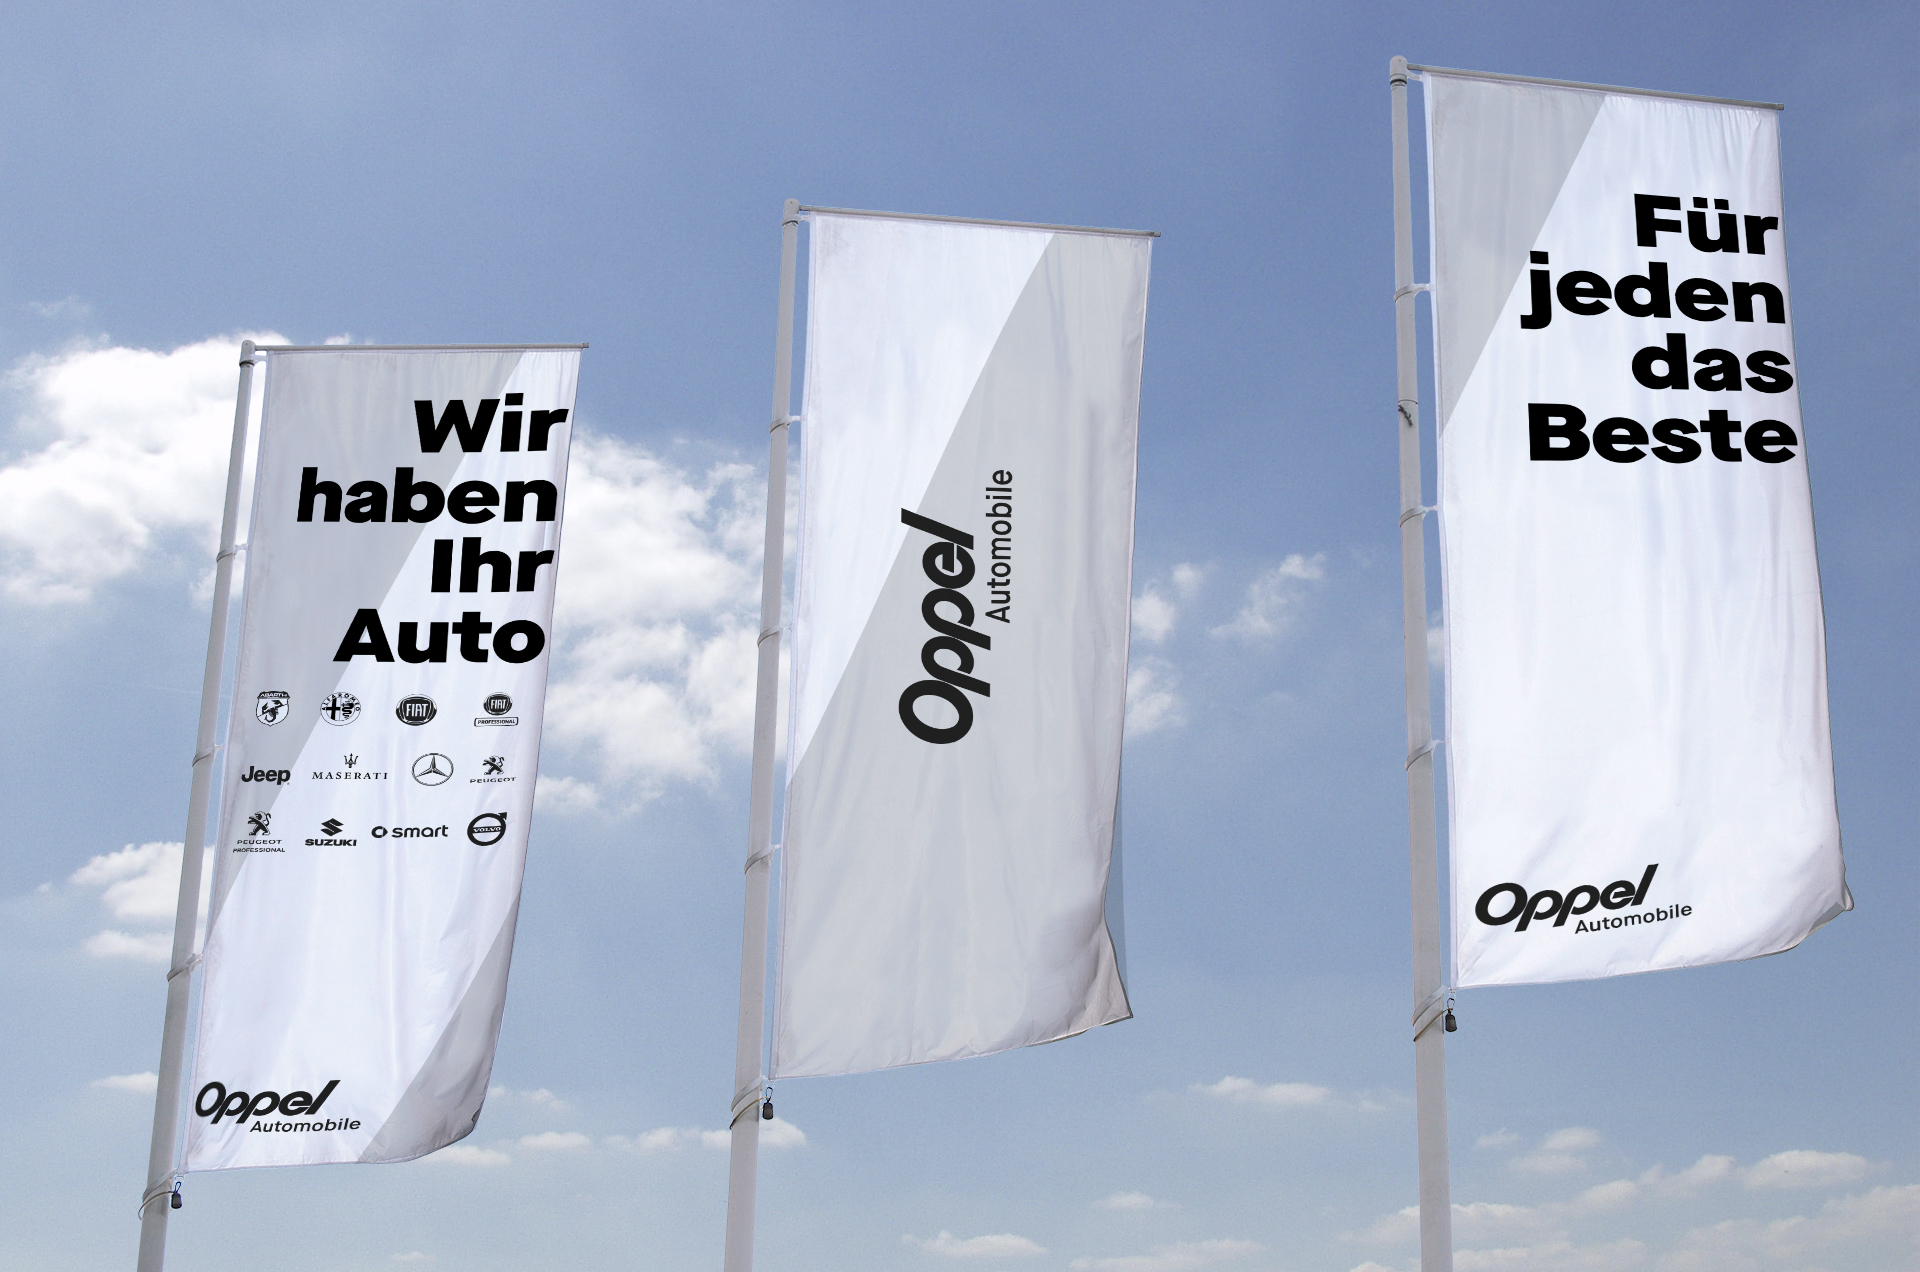 Oppel Automobile – Corporate Design Autohaus, Flaggen